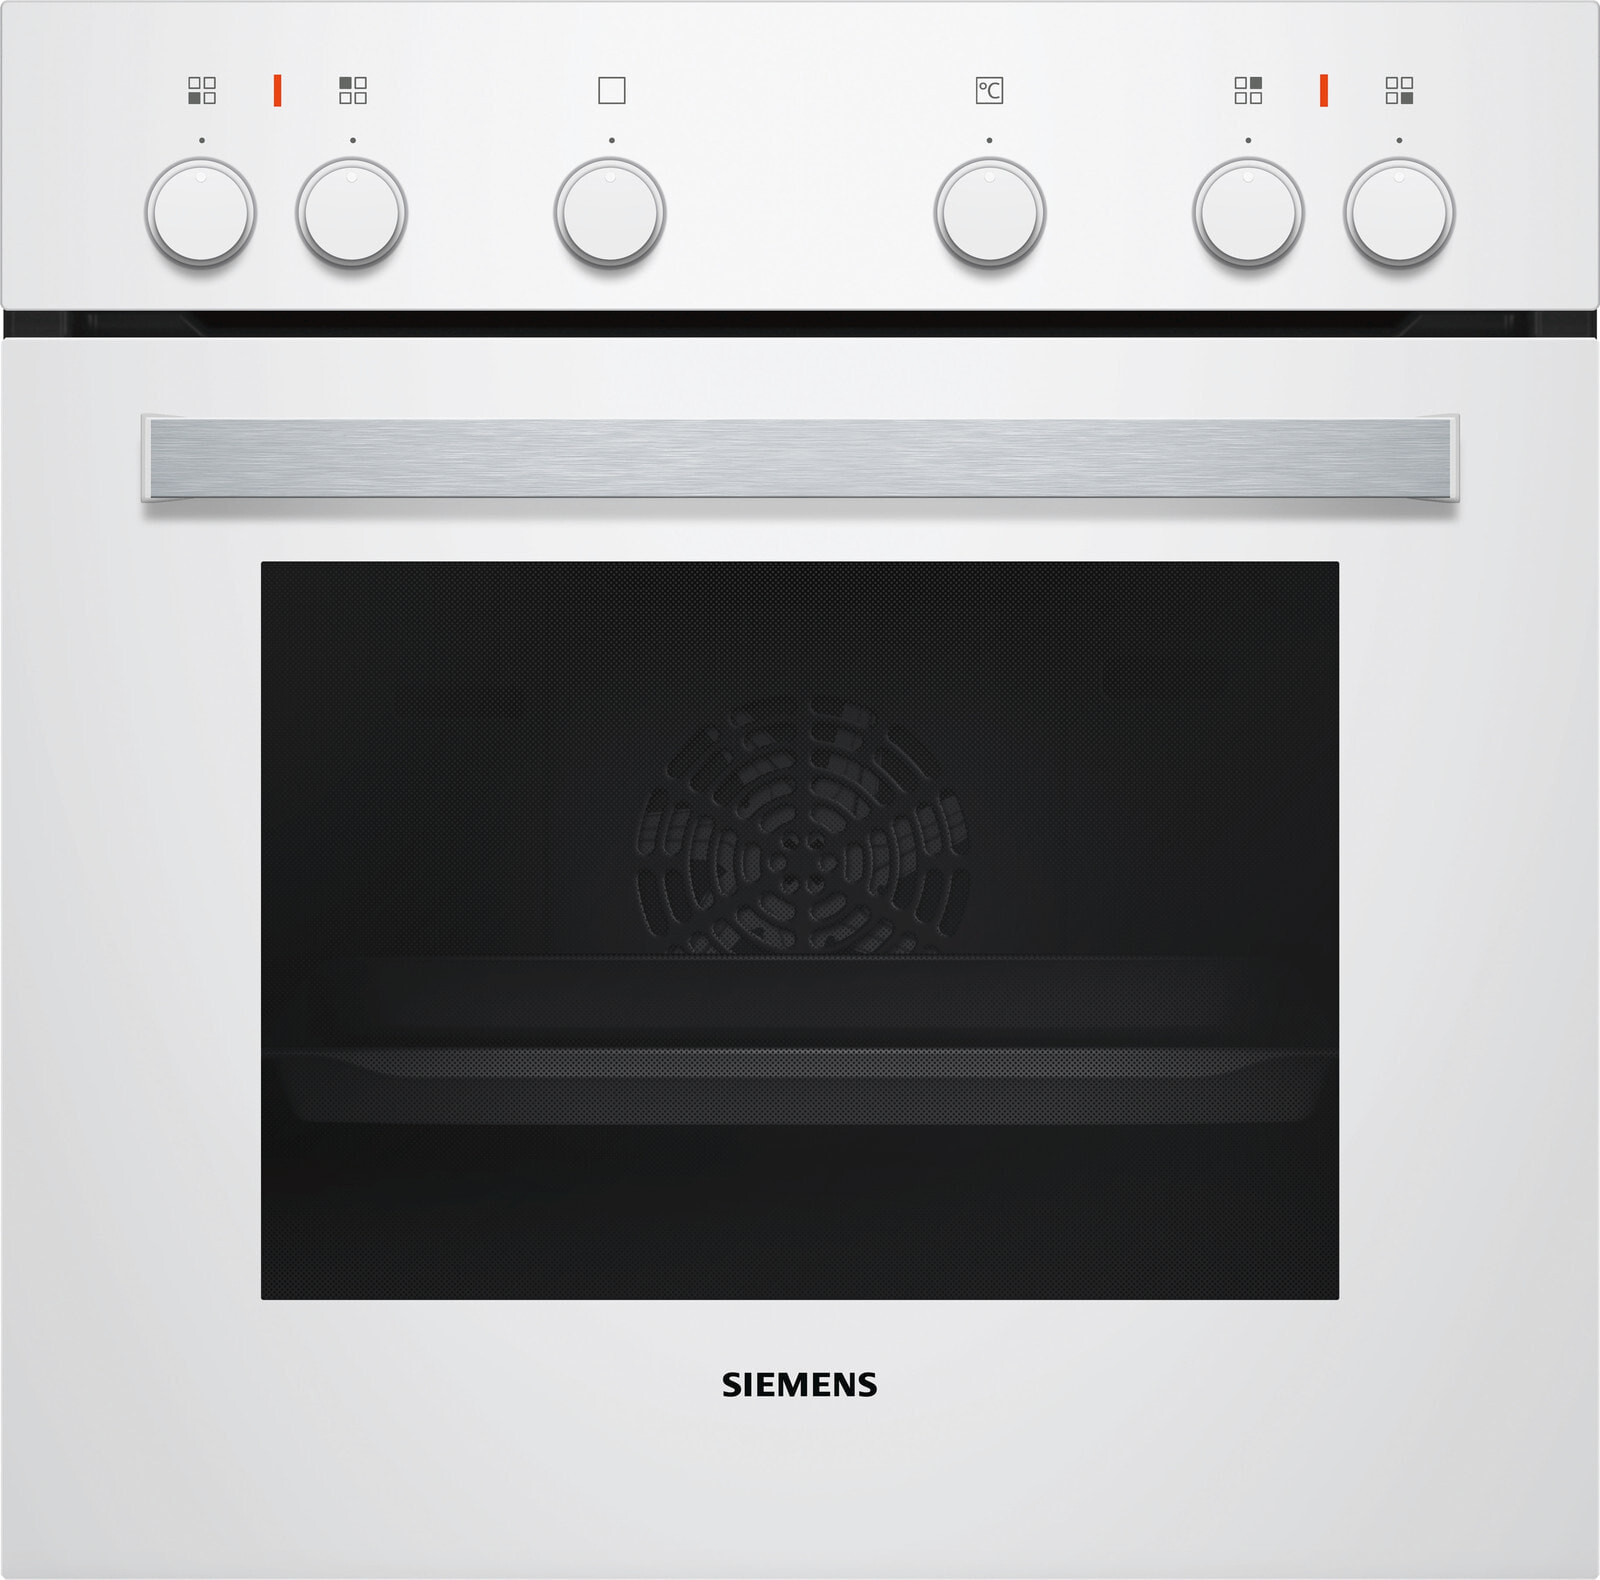 Siemens EQ110KA1WE набор кухонной техники Керамический Электрическая плита